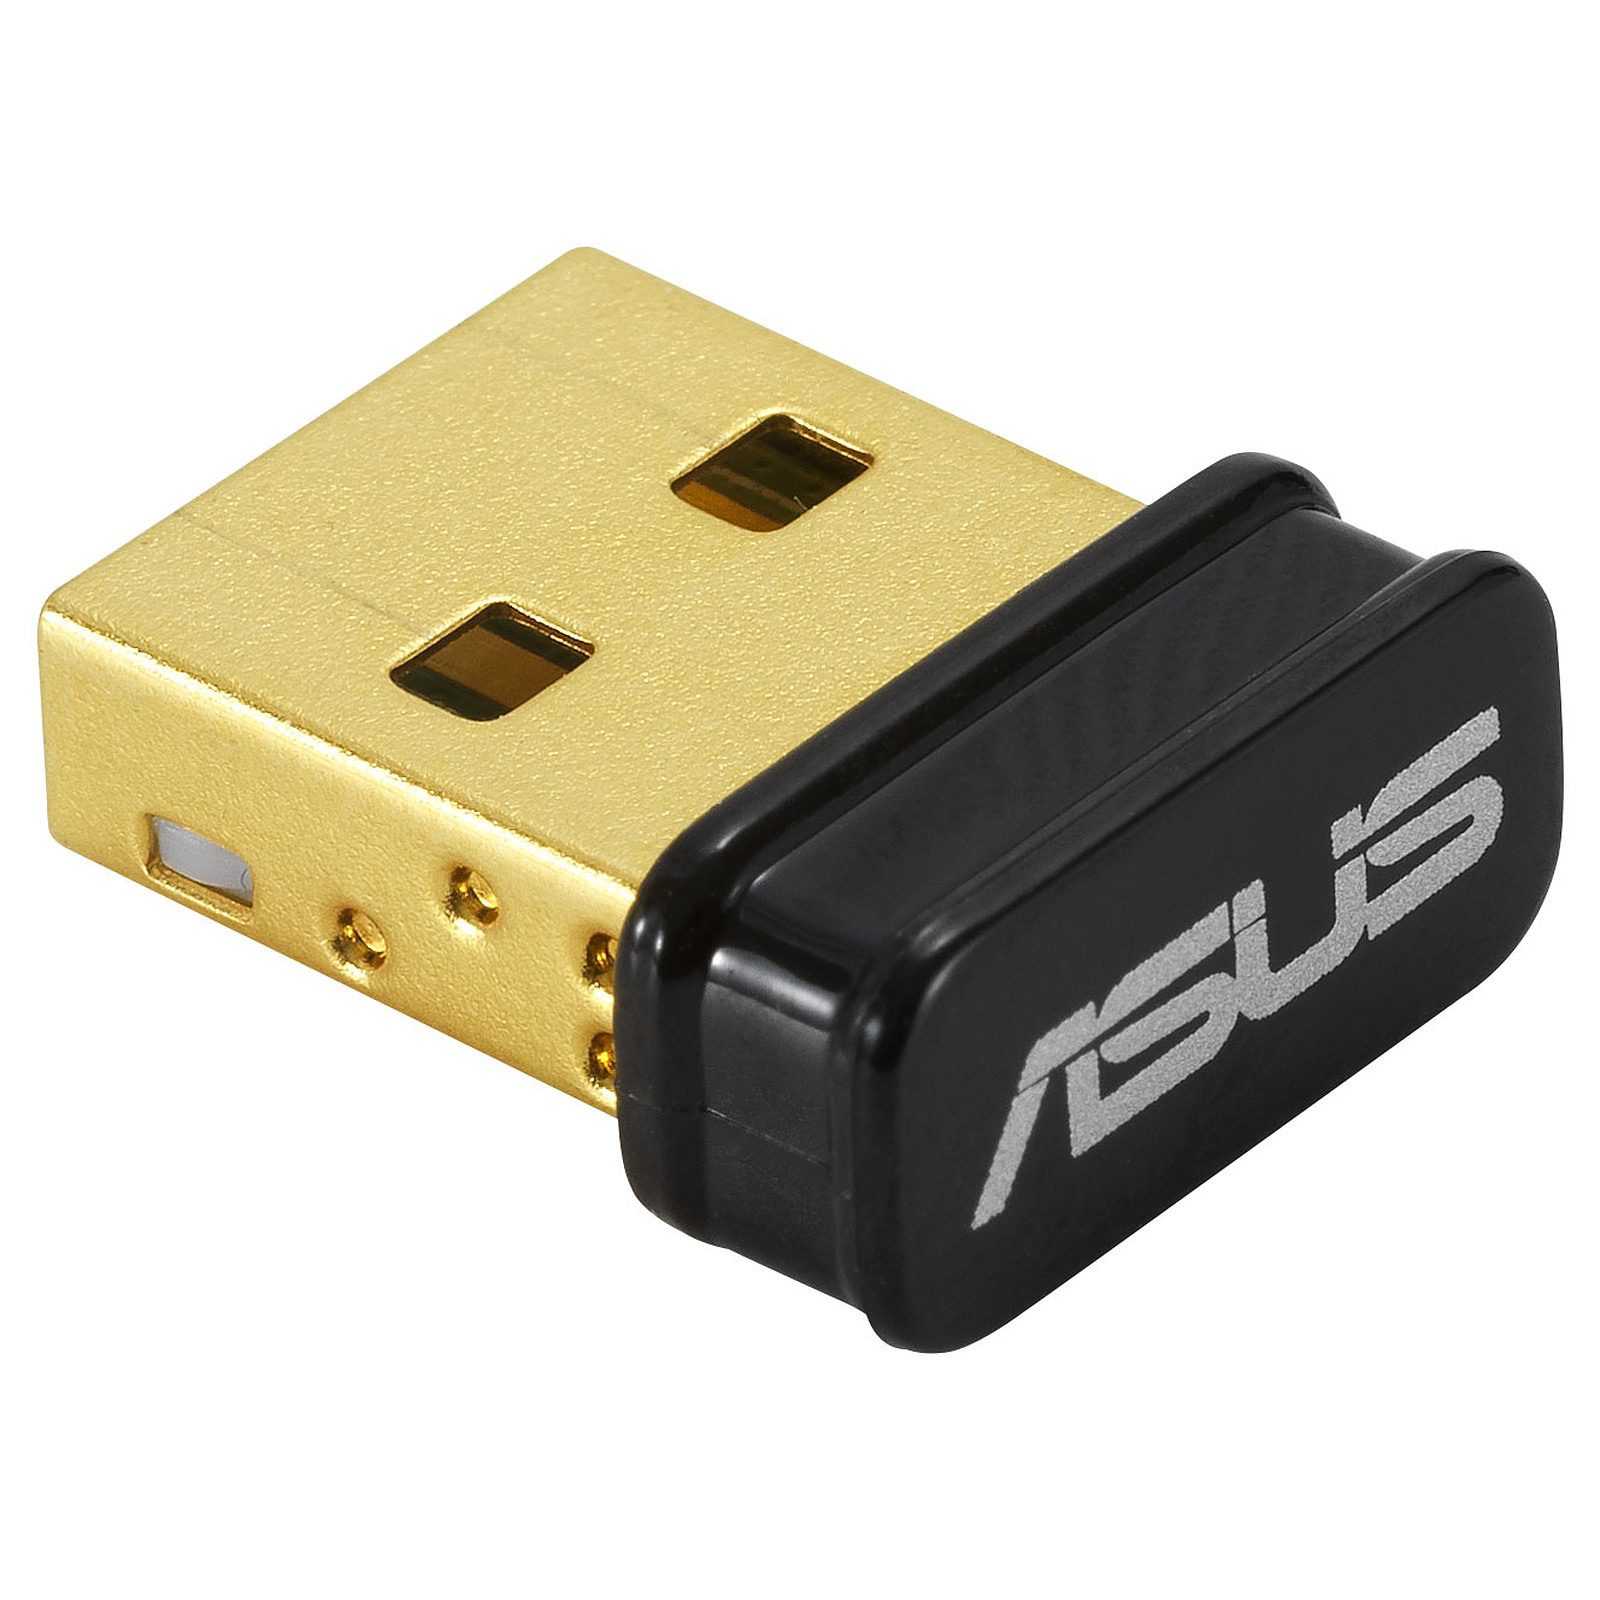 ASUS USB BT500 - Connecteur bluetooth ASUS - Occasion